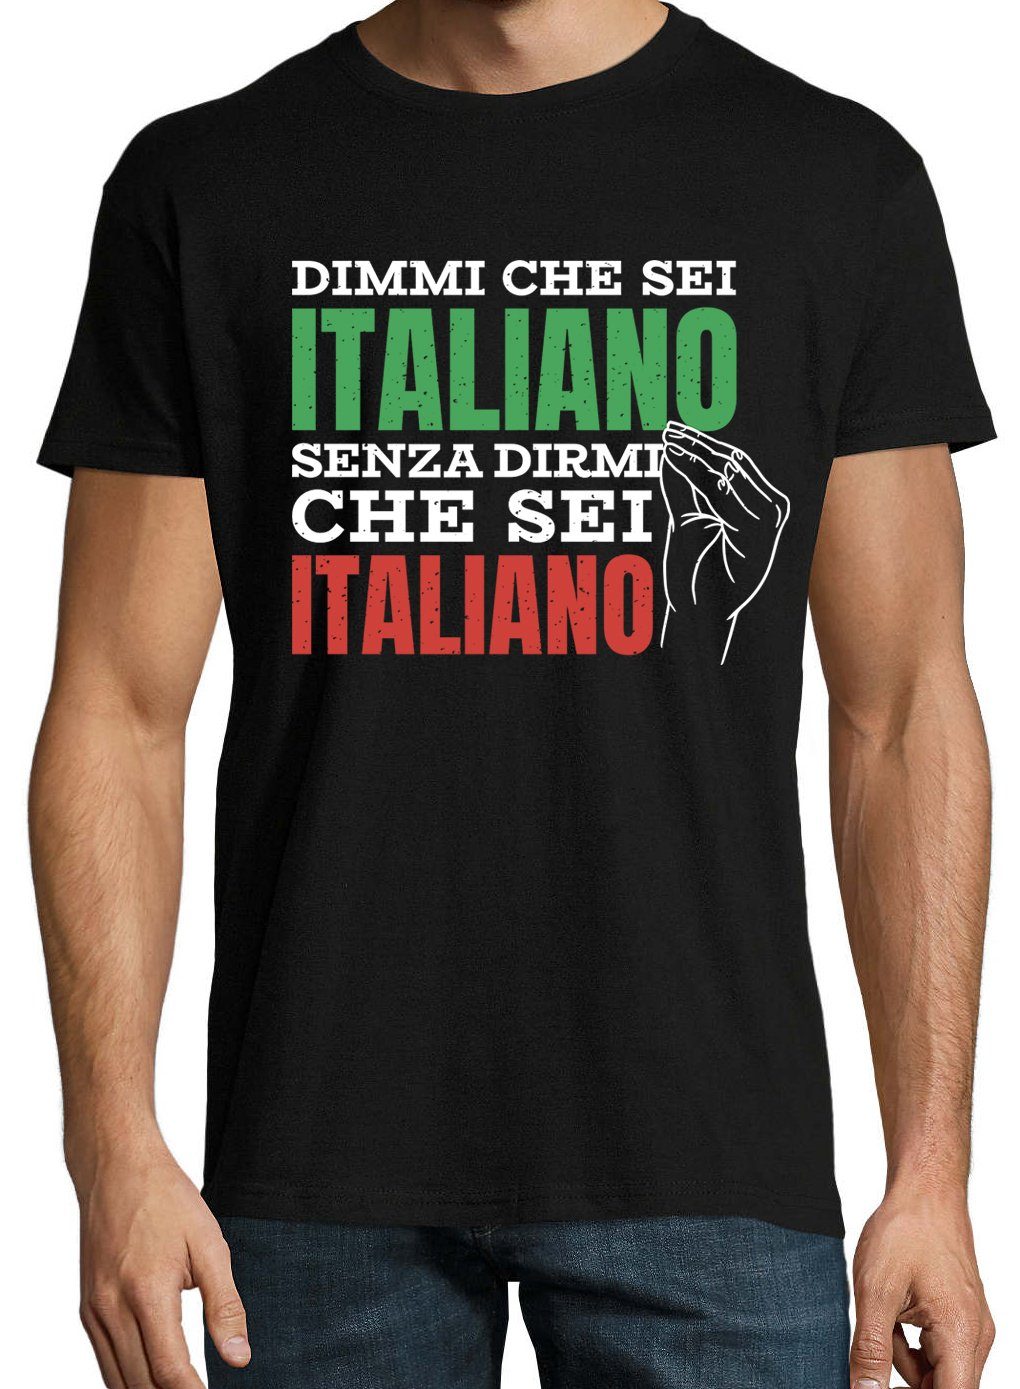 Youth Designz Es "Sag Bist, Shirt T-Shirt Sagen" Frontprint Mir lustigem Italiener Schwarz Mir Herren Zu Dass mit Du Ohne